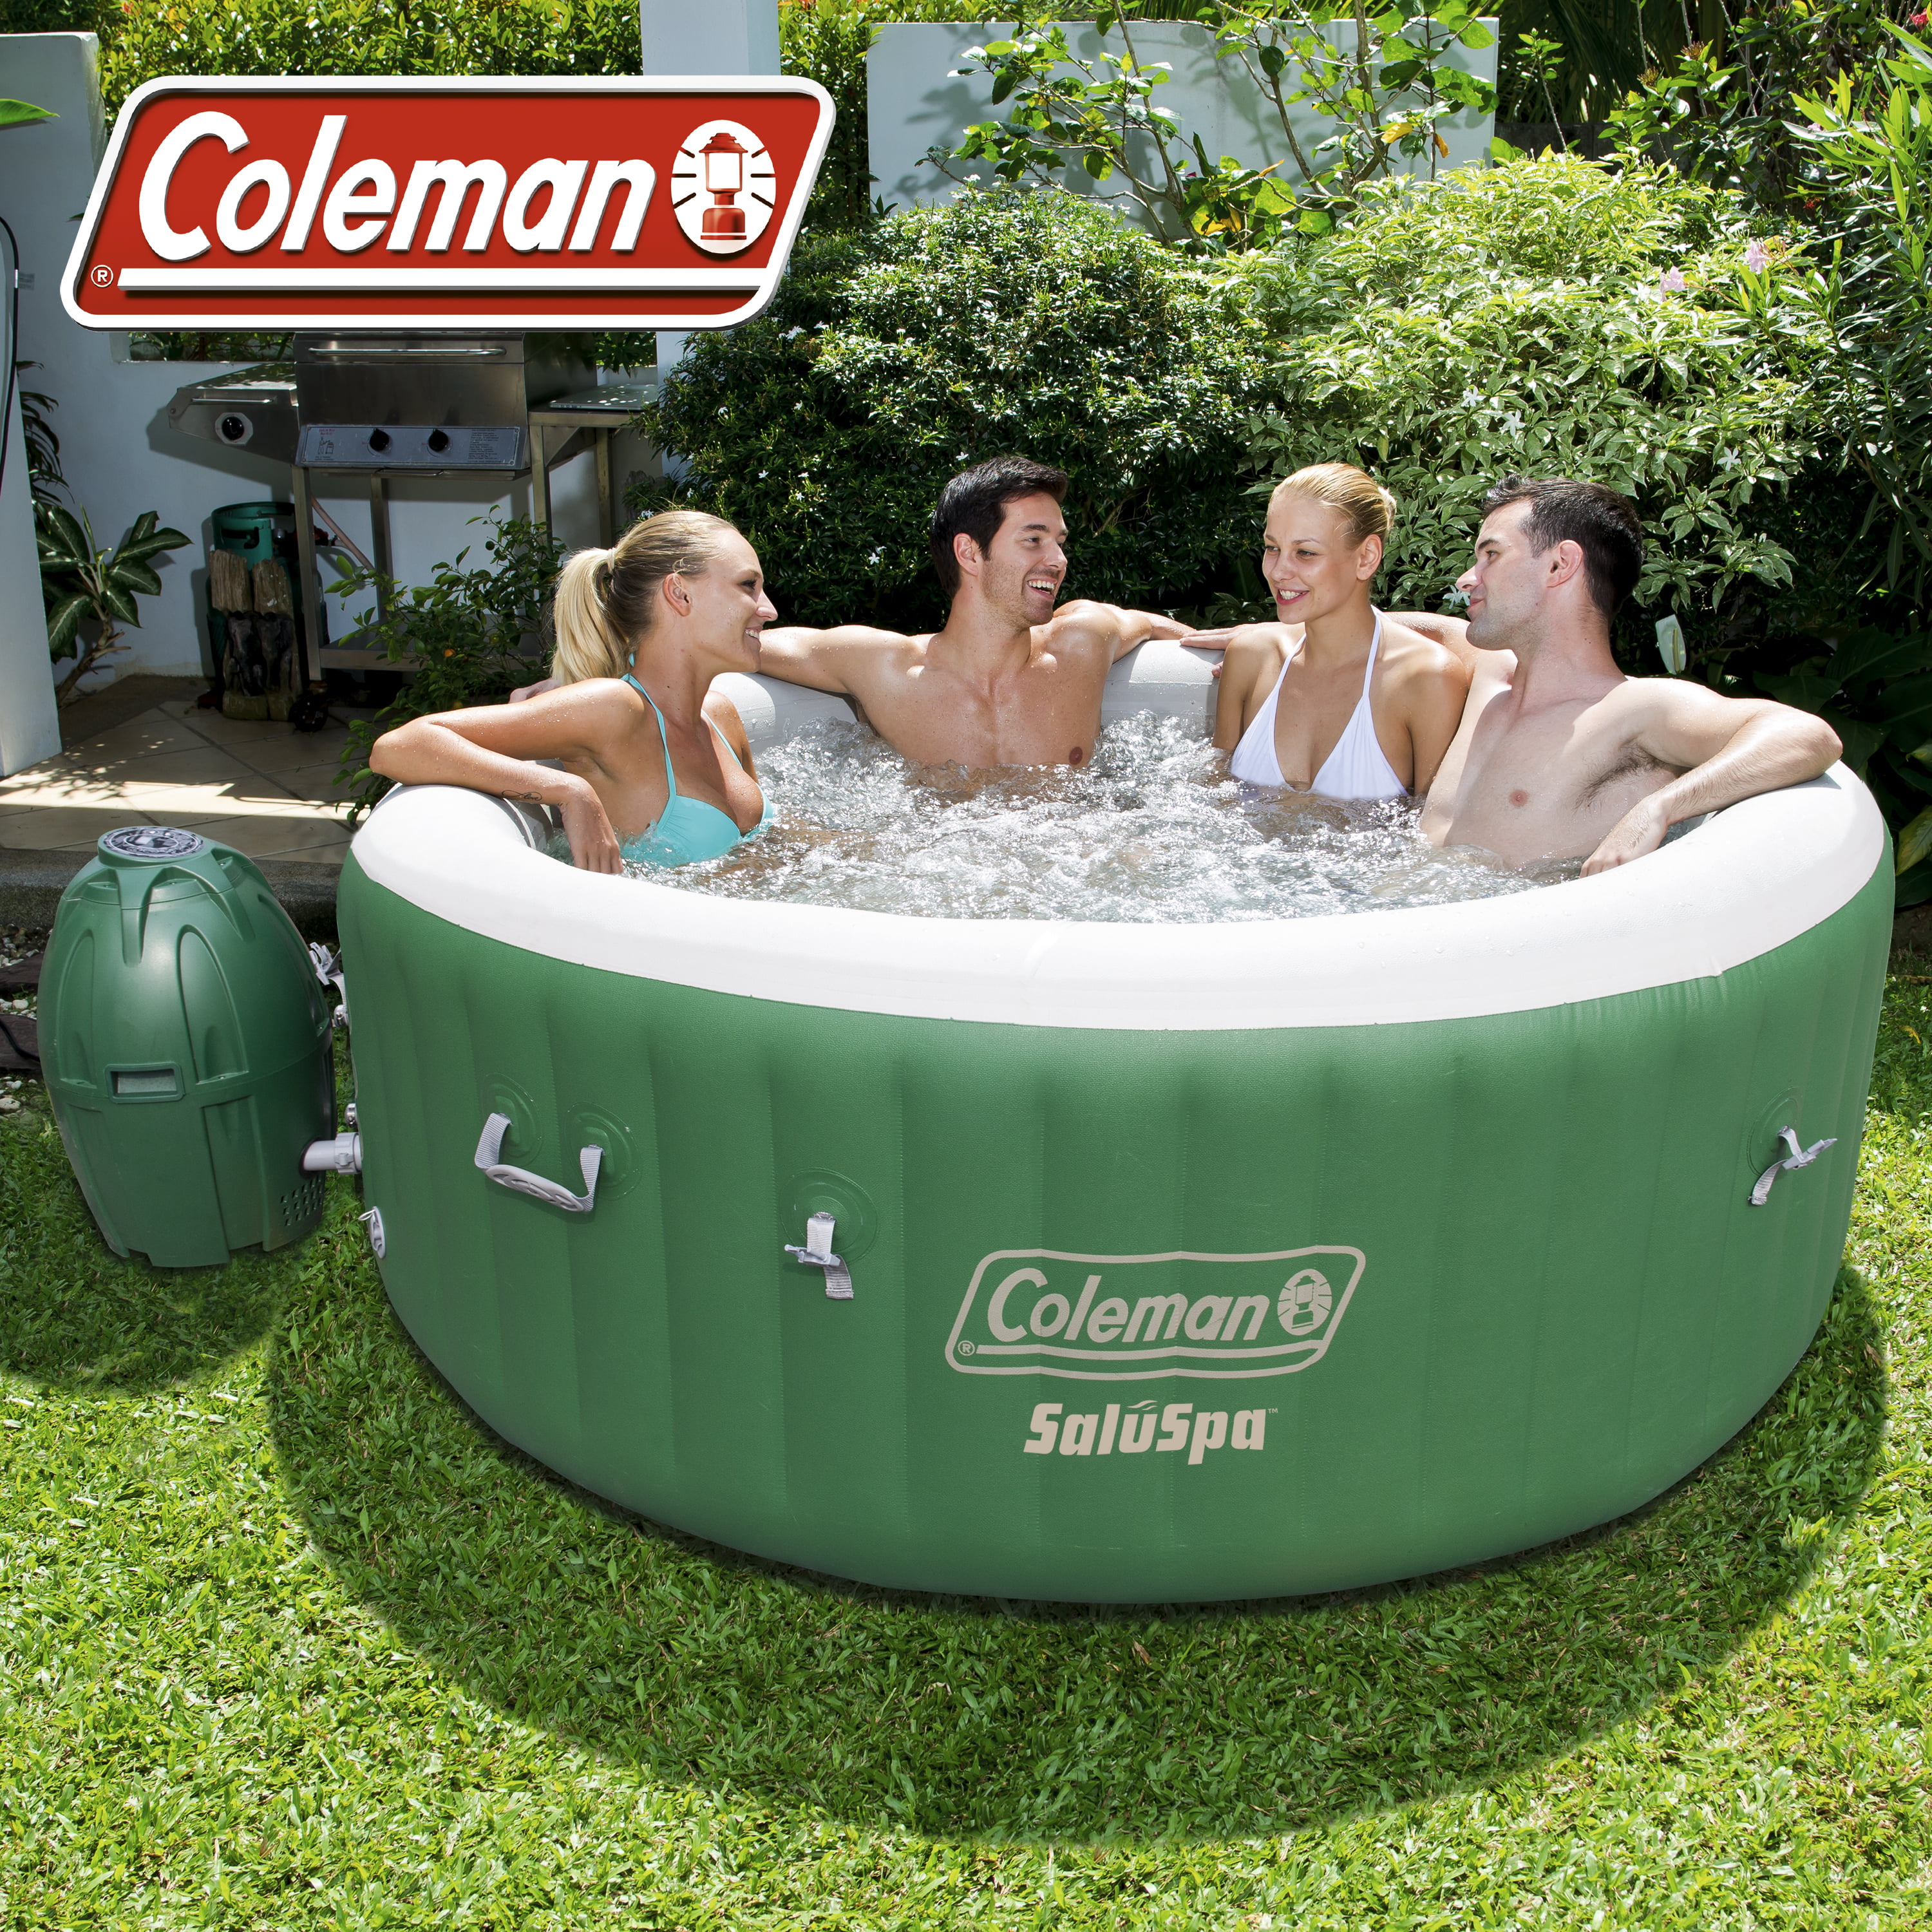 Coleman Saluspa Inflatable Hot Tub Walmart Com